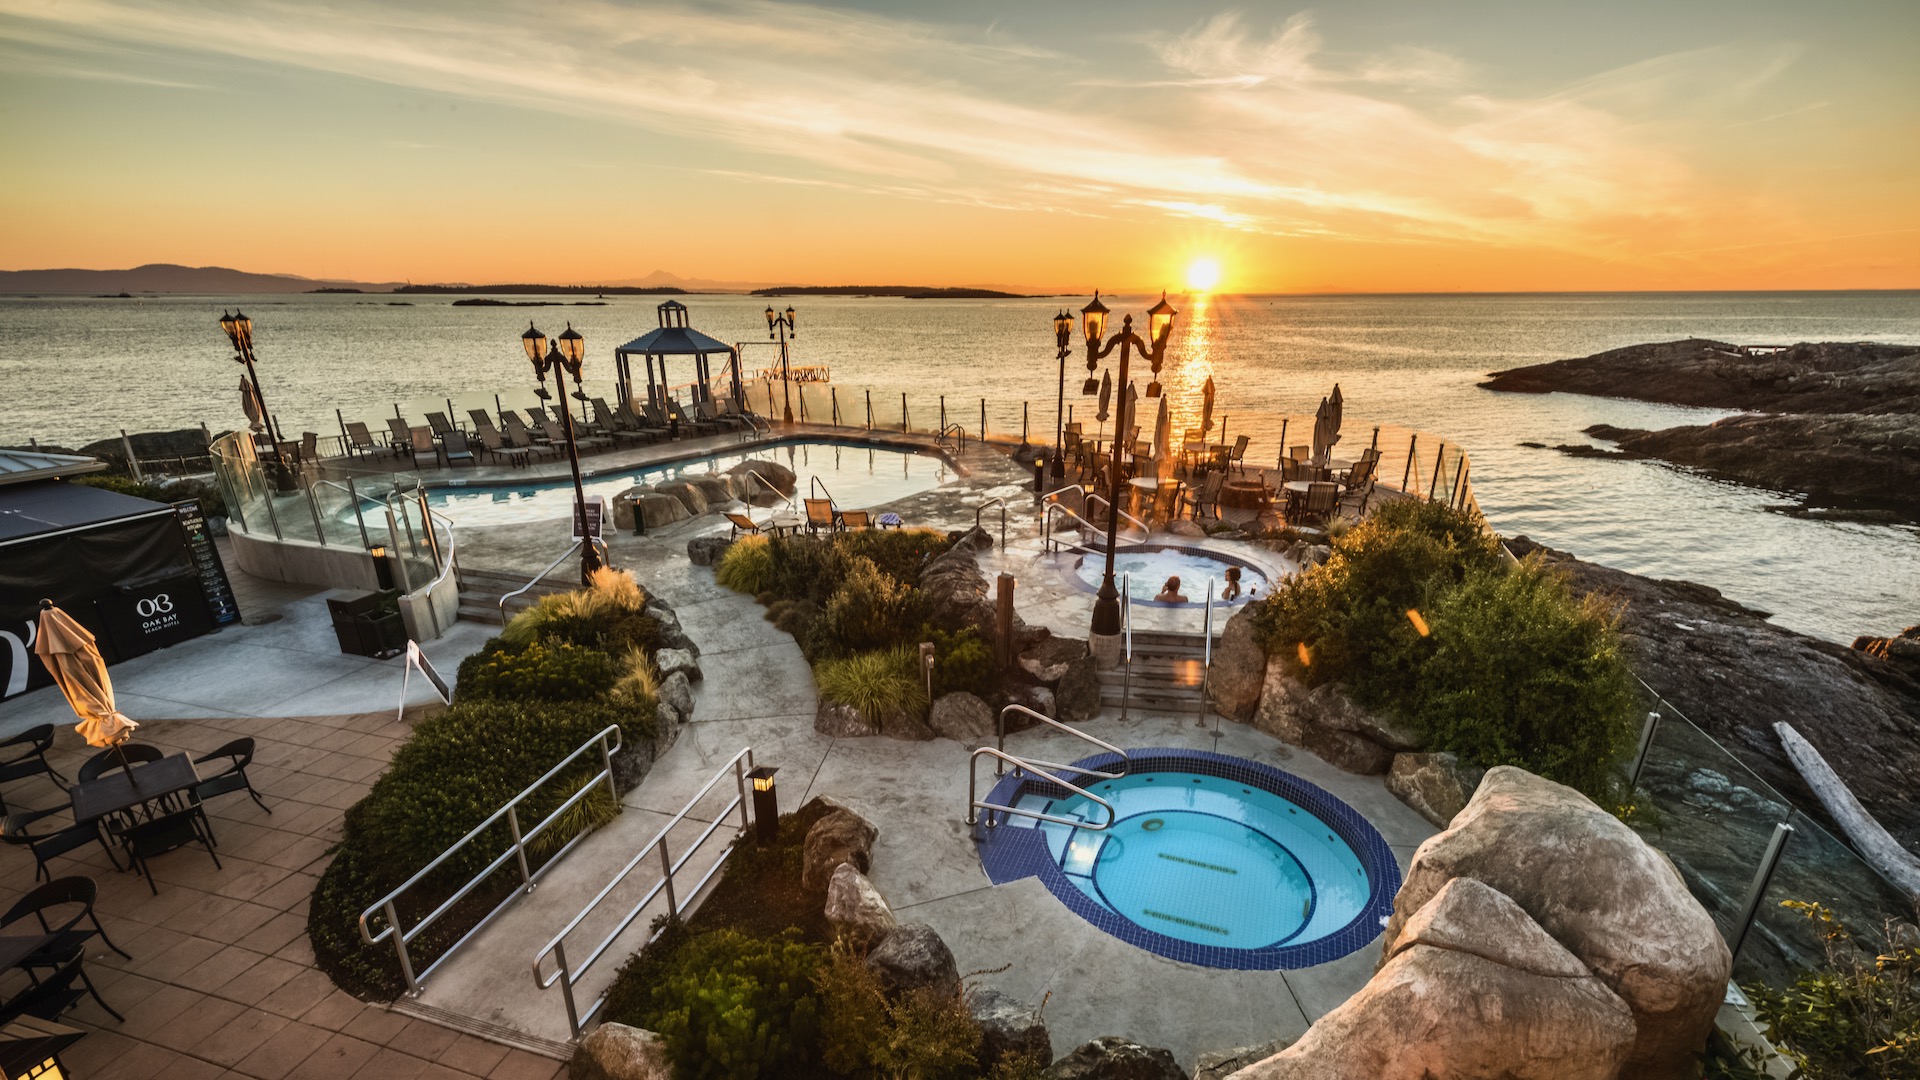 Boathouse Spa & Baths, Oak Bay Beach Hotel | Spas of America